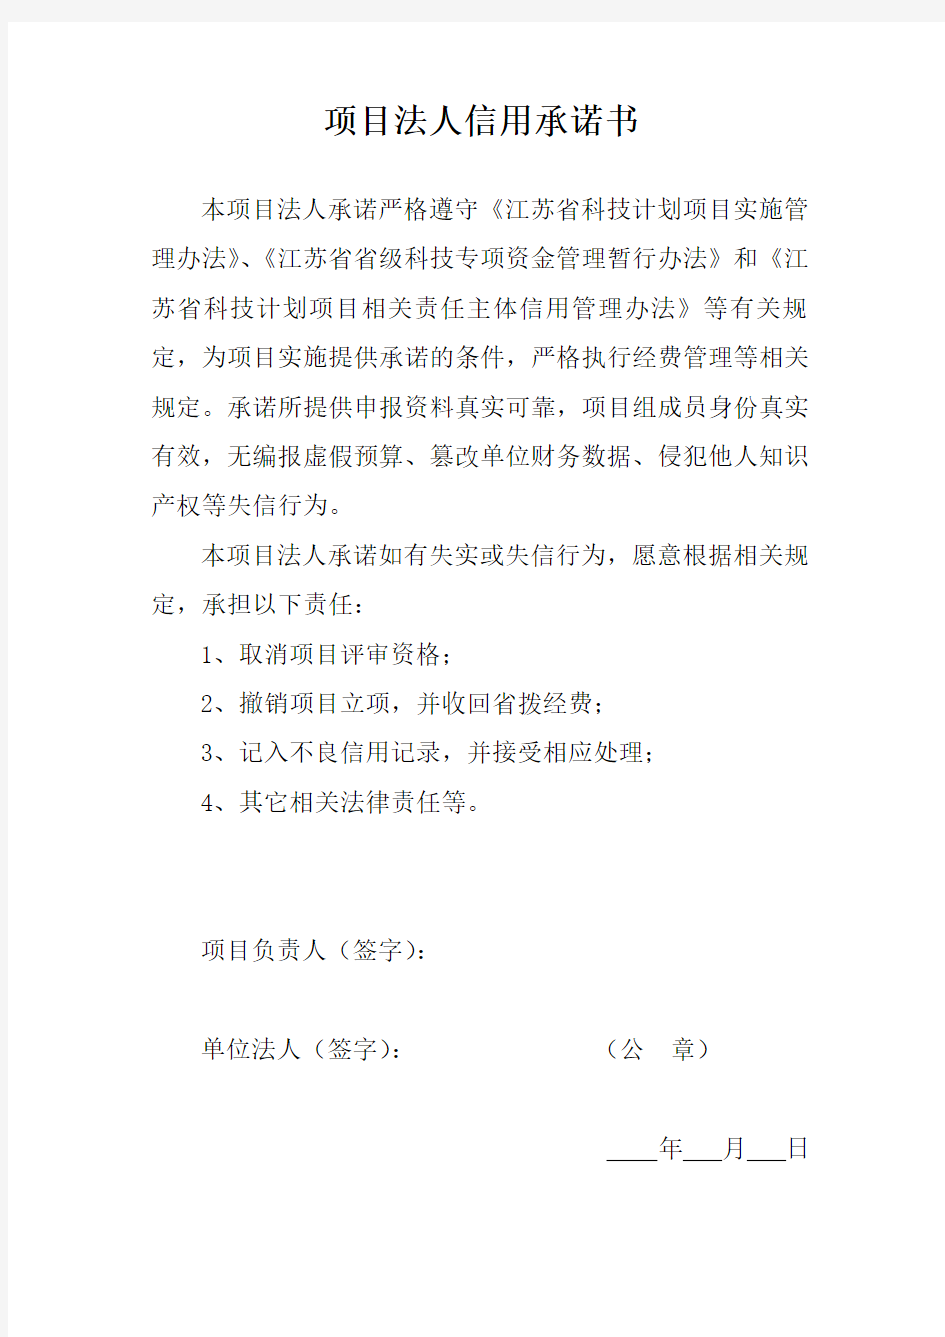 江苏省科技计划项目申报书(现代农业)